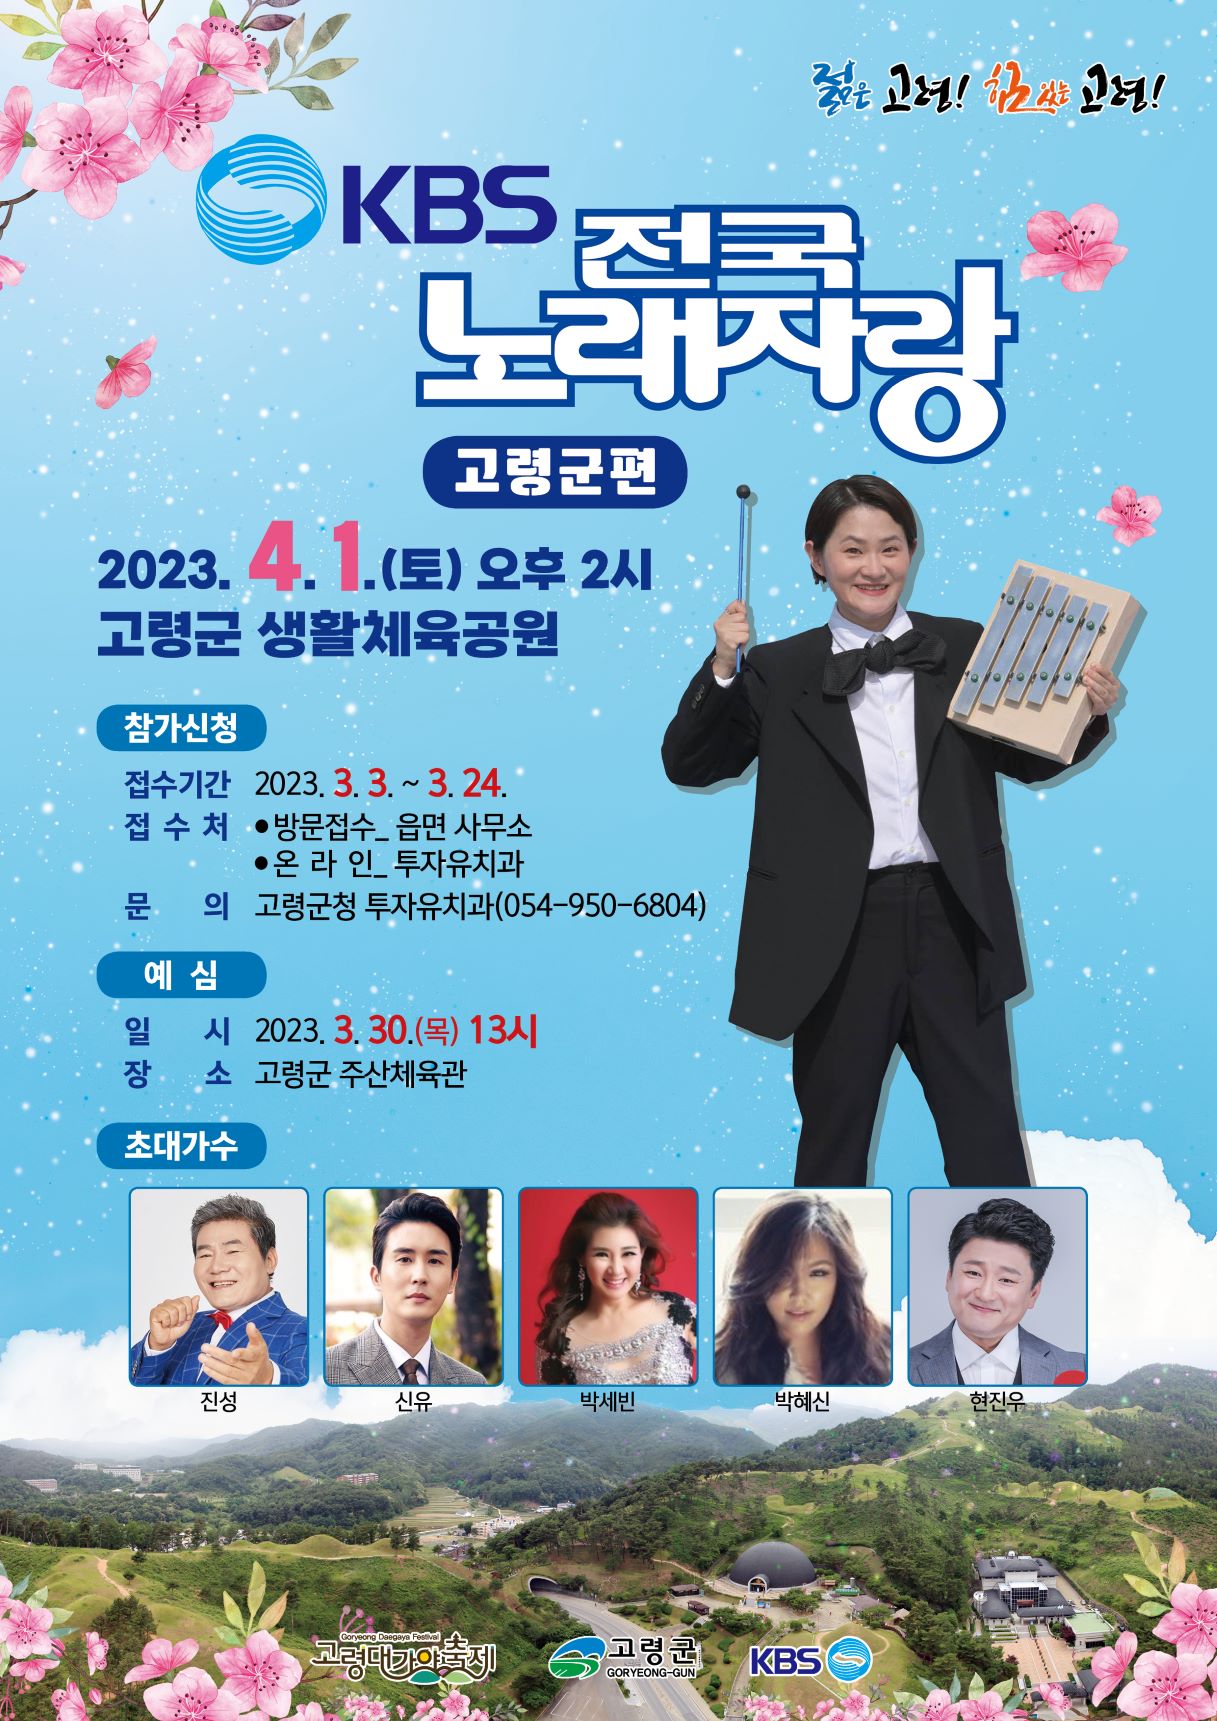 KBS 전국노래자랑 고령군편 촬영 홍보 및 참가신청 안내 2